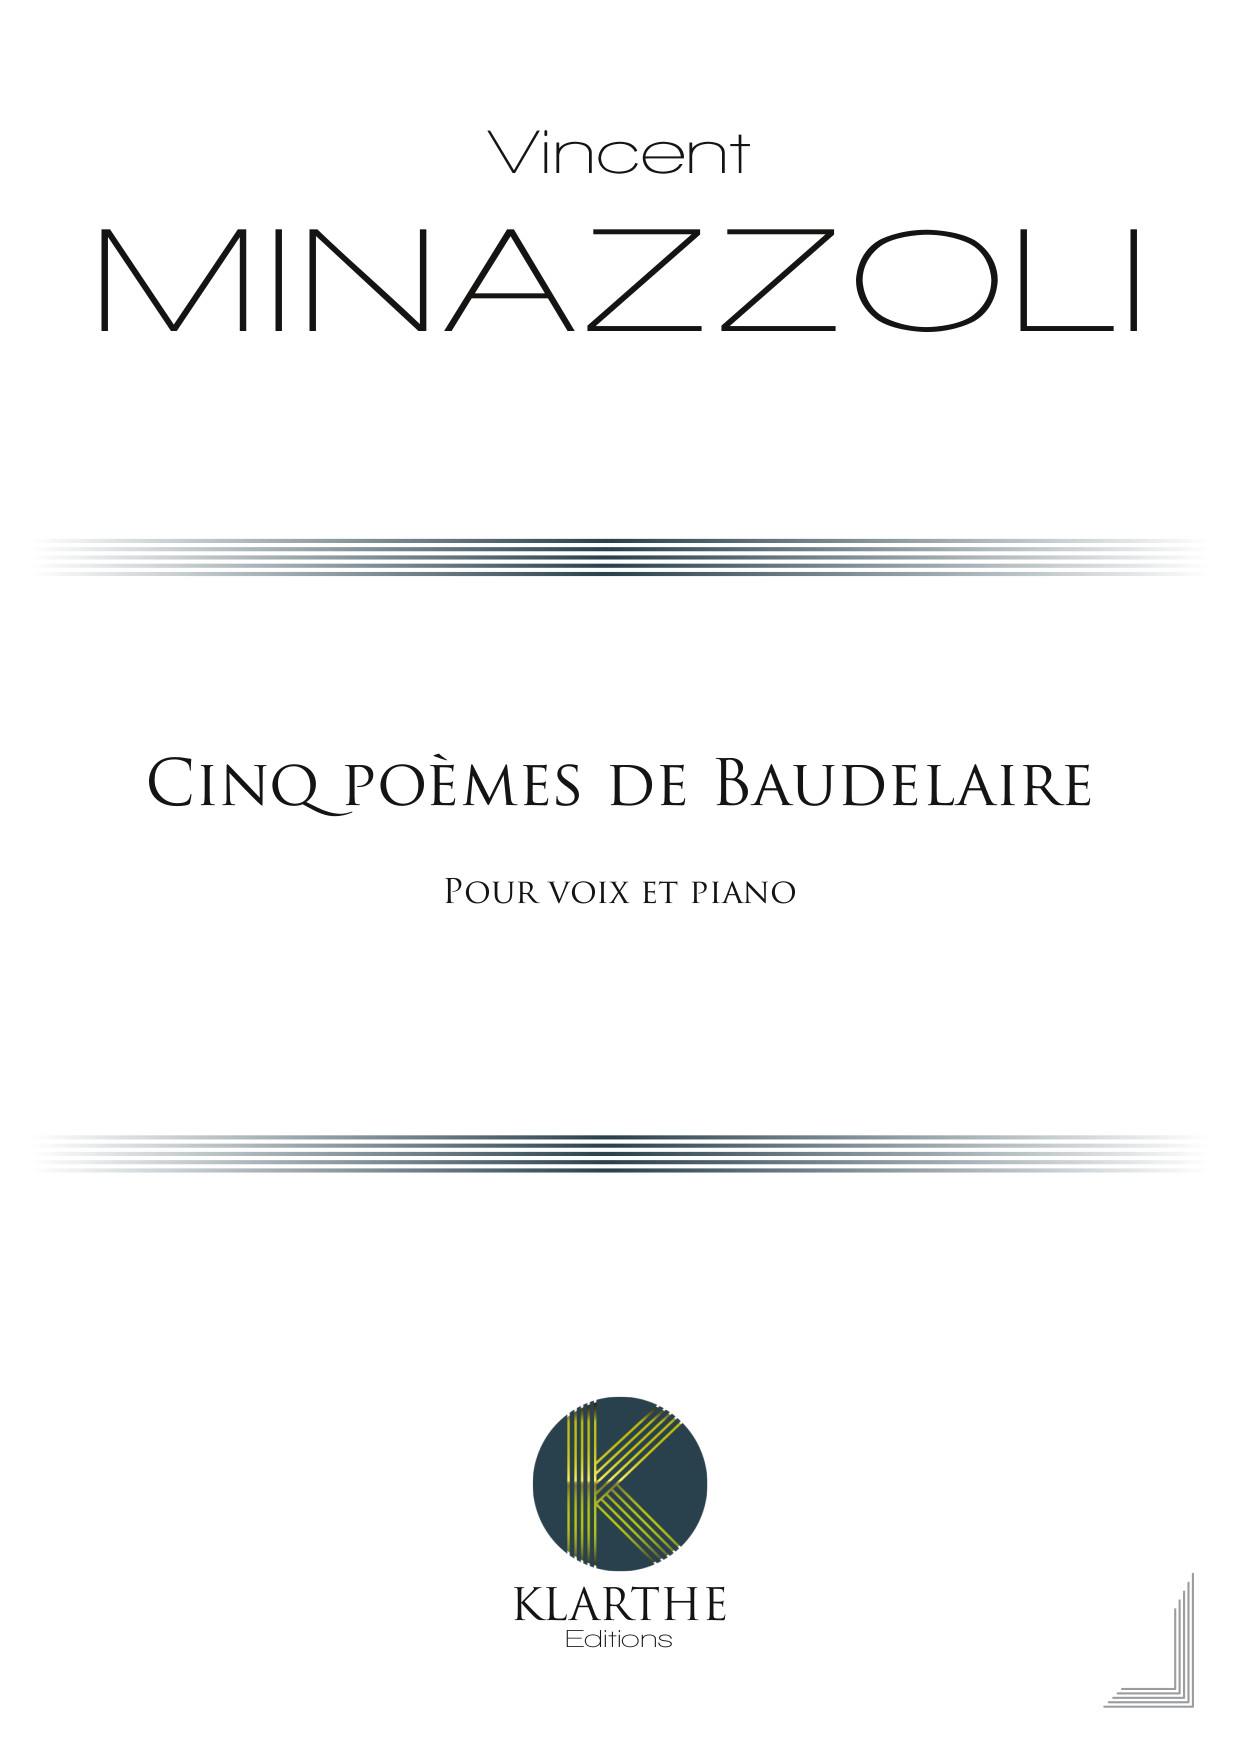 Cinq pomes de Baudelaire (MINAZZOLI VINCENT)